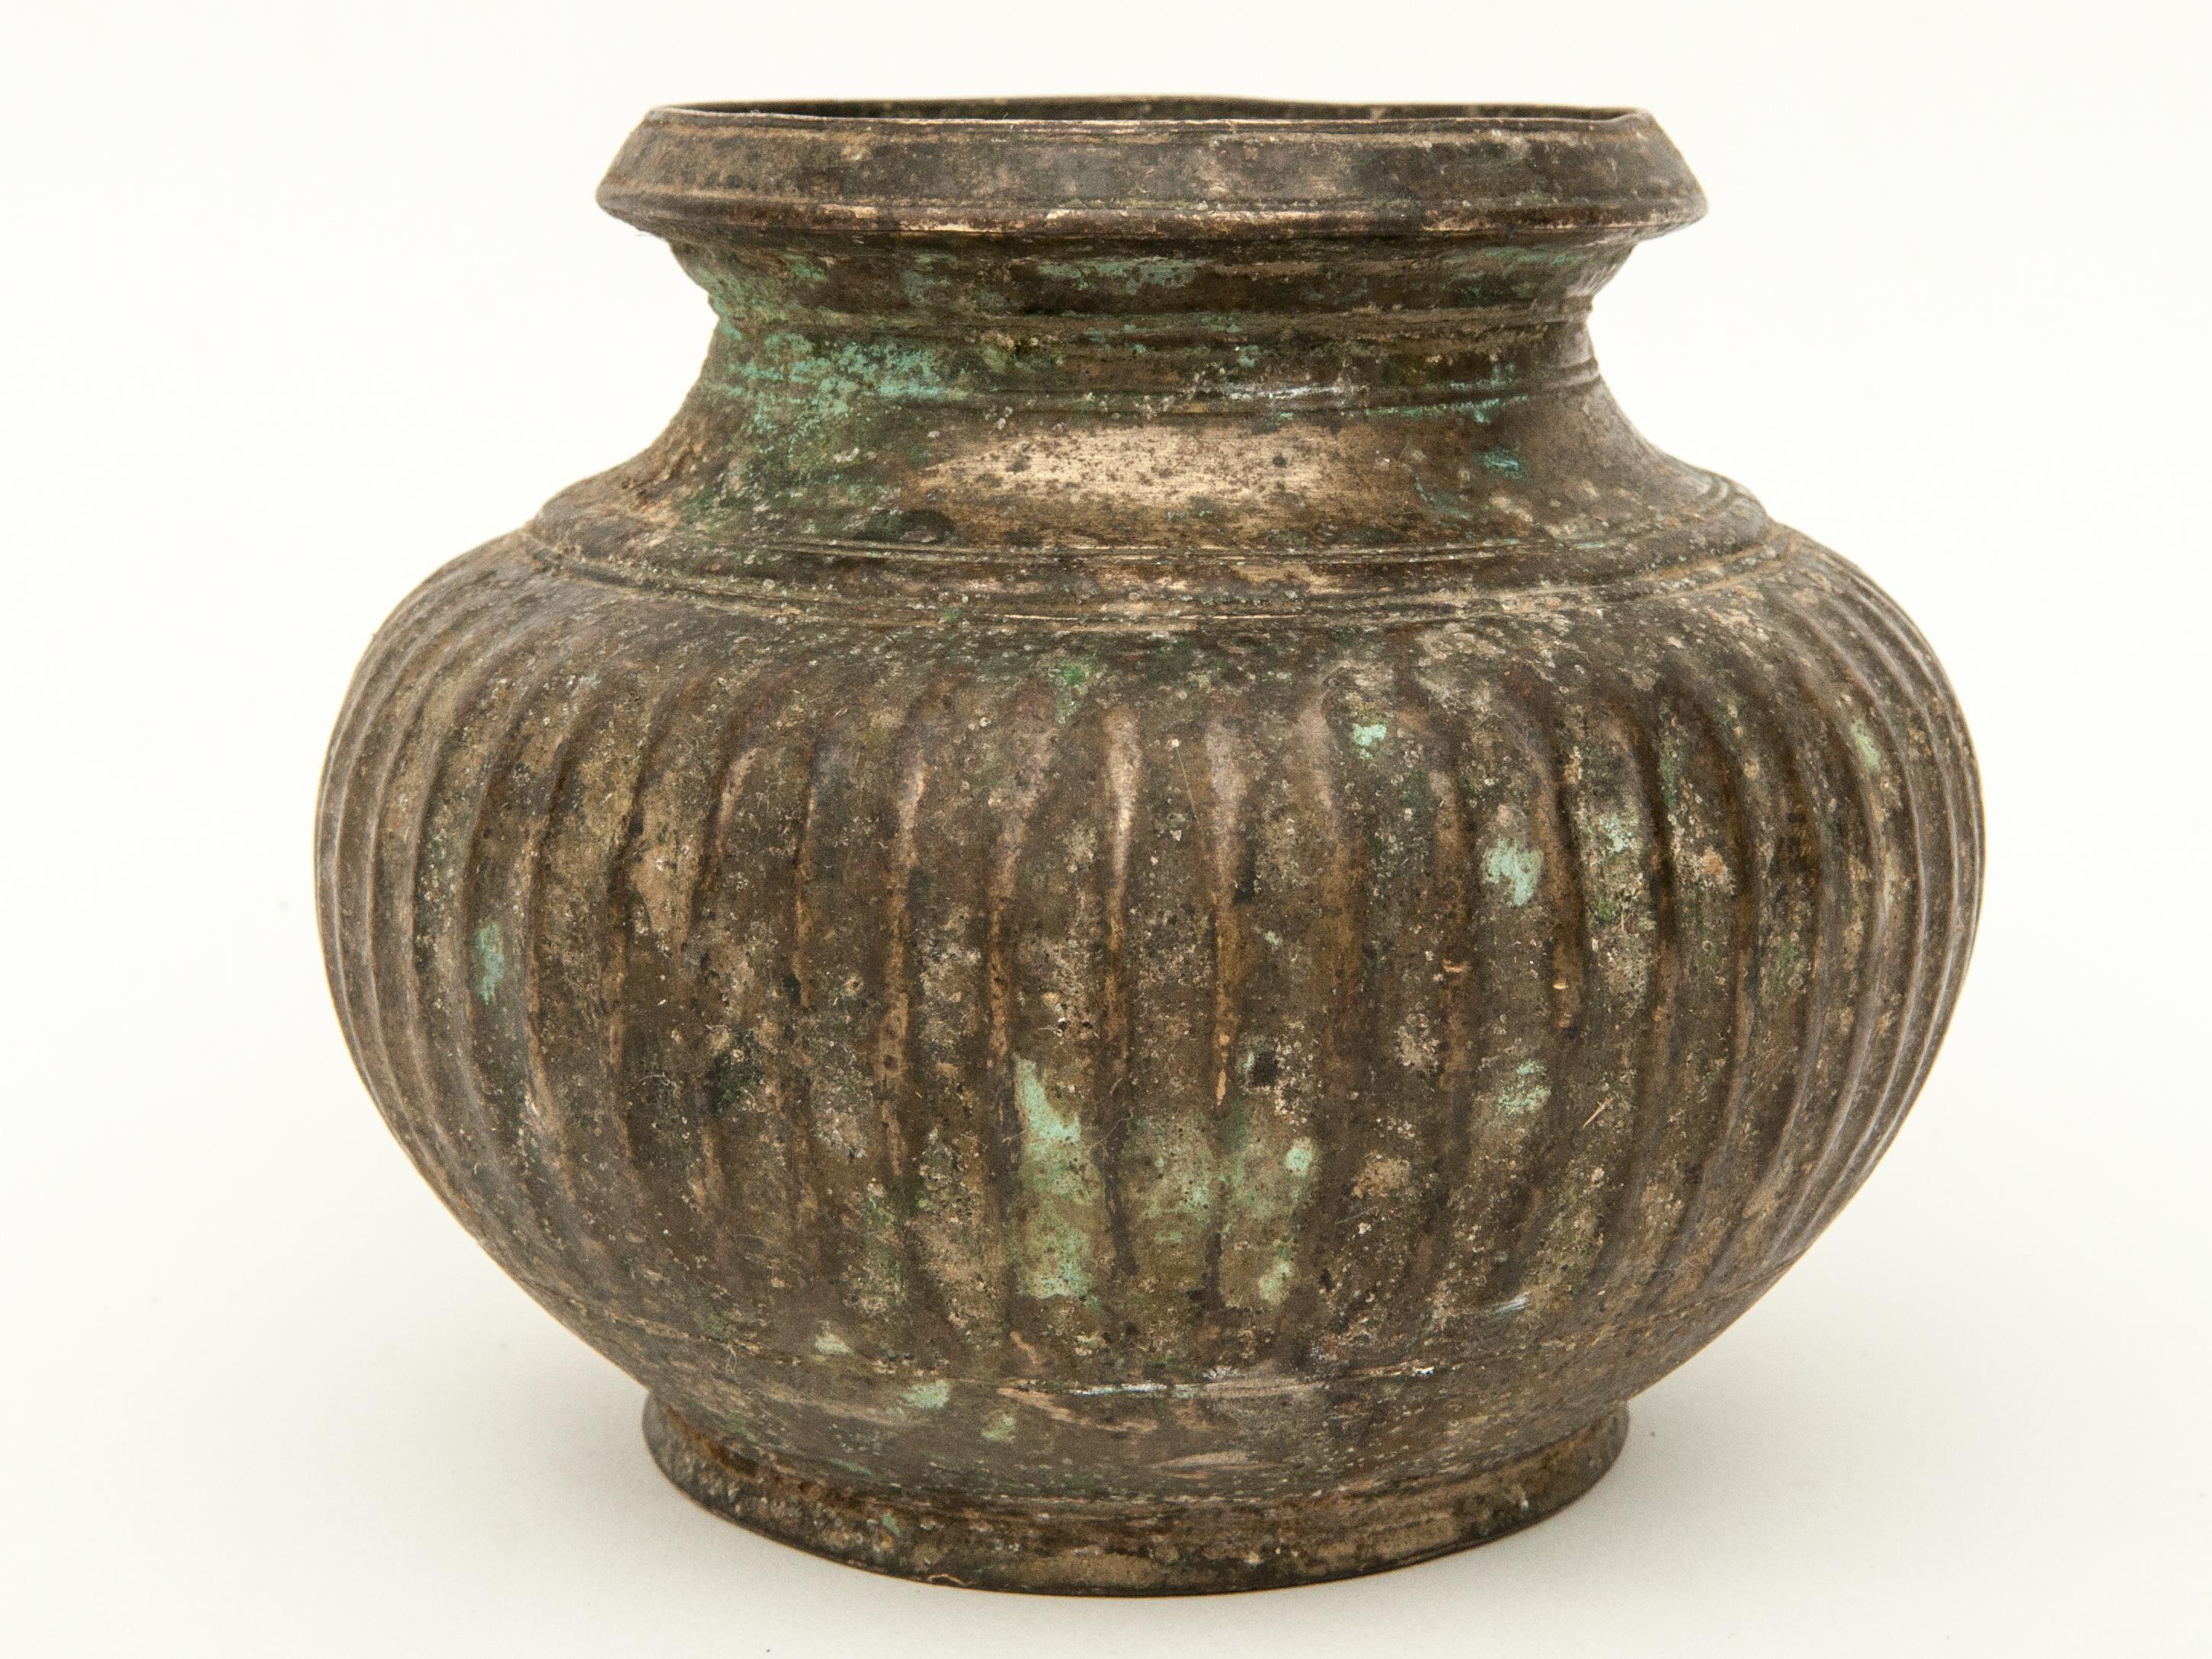 Metalwork Antique Tibetan Bronze Pot, 18th Century or Earlier